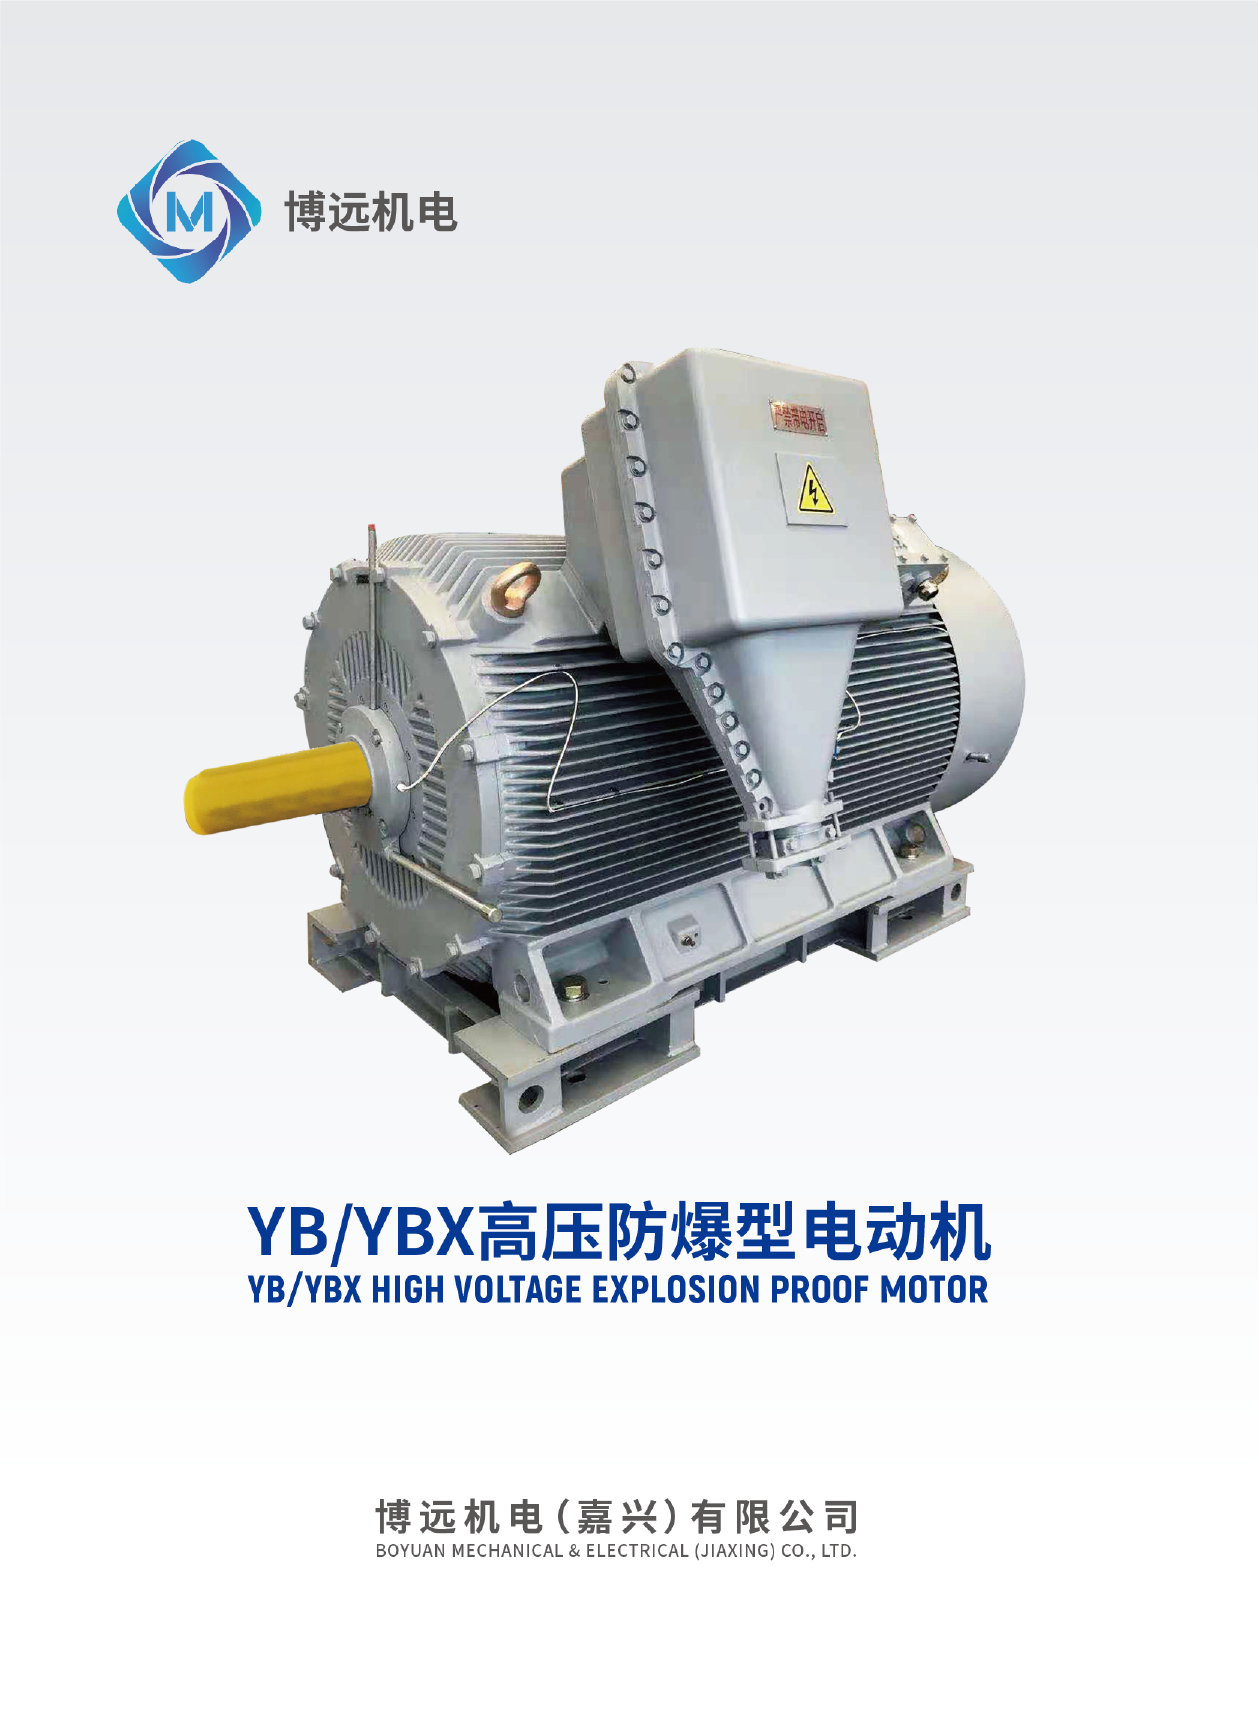 YBYBX高压防爆型电动机选型手册-01.png